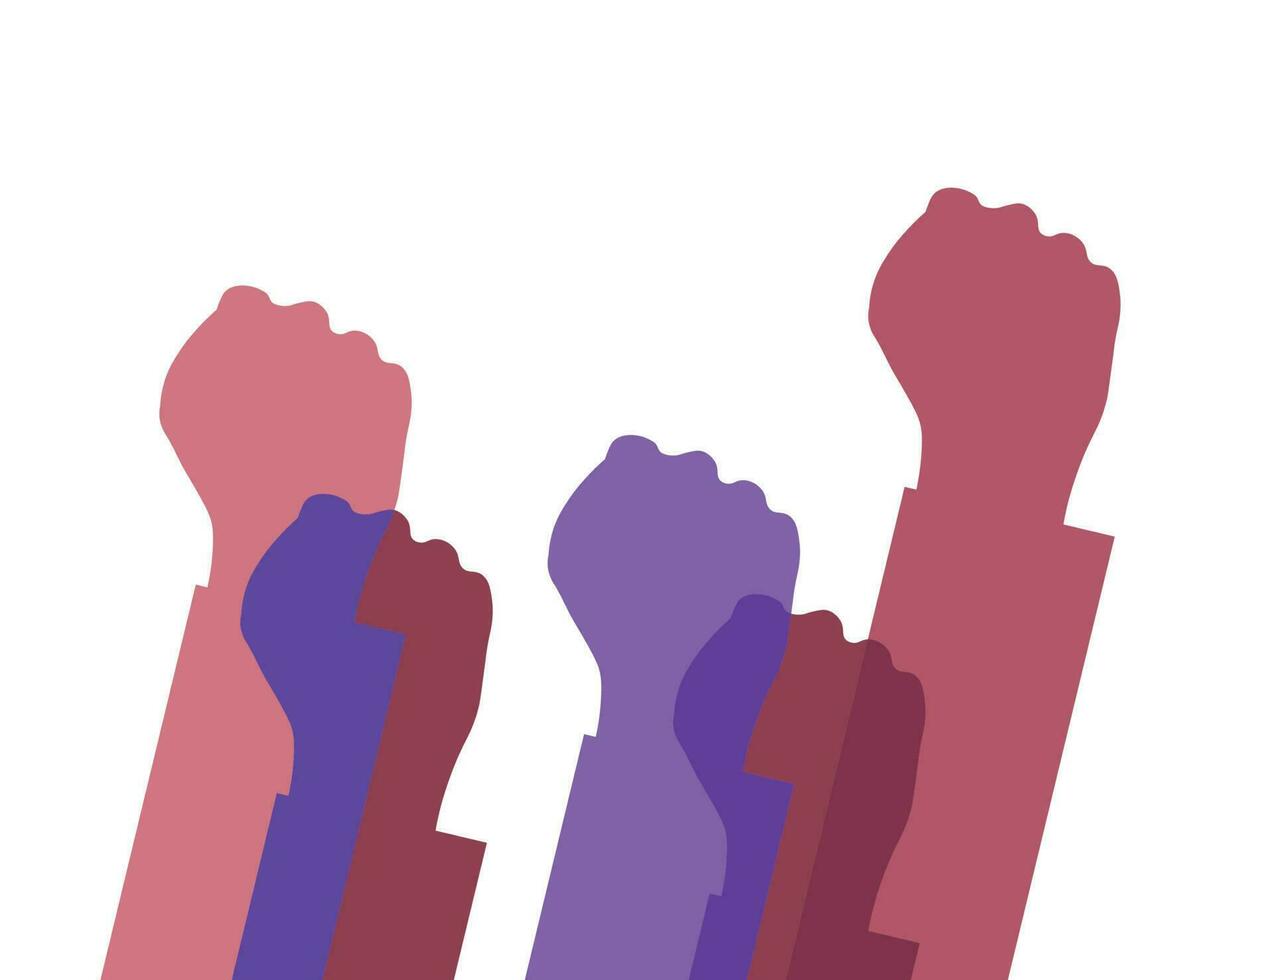 elevado manos. grupo de personas de diferente Razas elevado su puños como símbolo de unidad, protesta, fuerza o victoria, éxito. concepto de unidad revolución, lucha, cooperación. vector ilustración